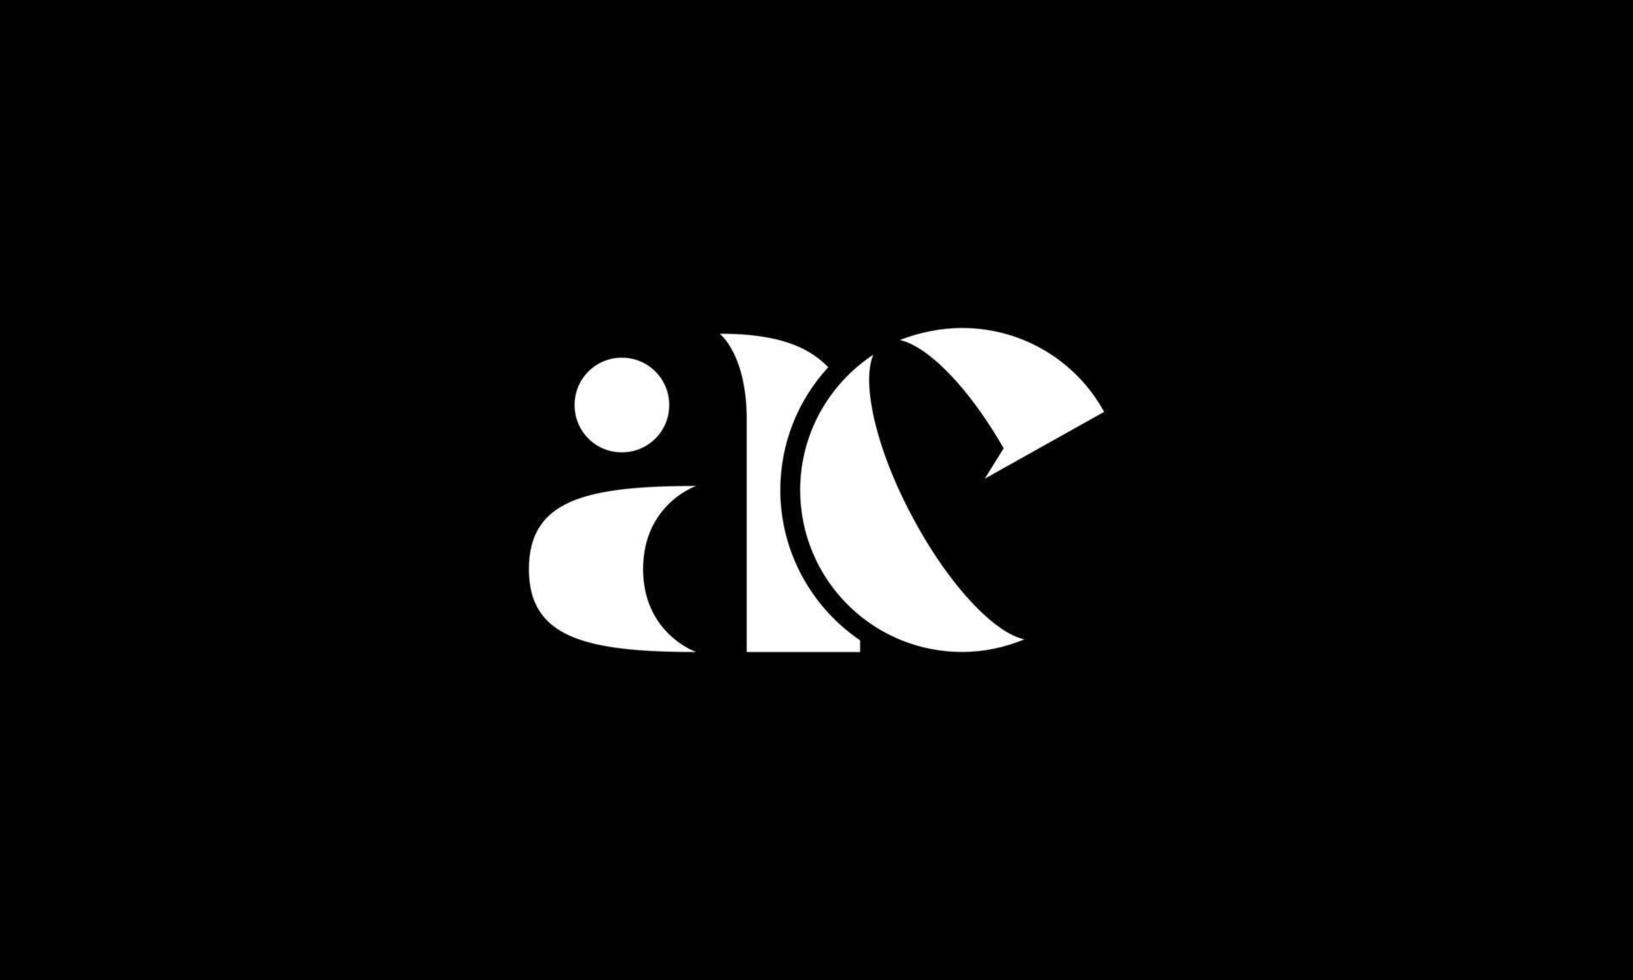 création de logo de lettre initiale ae sur fond noir. vecteur professionnel.